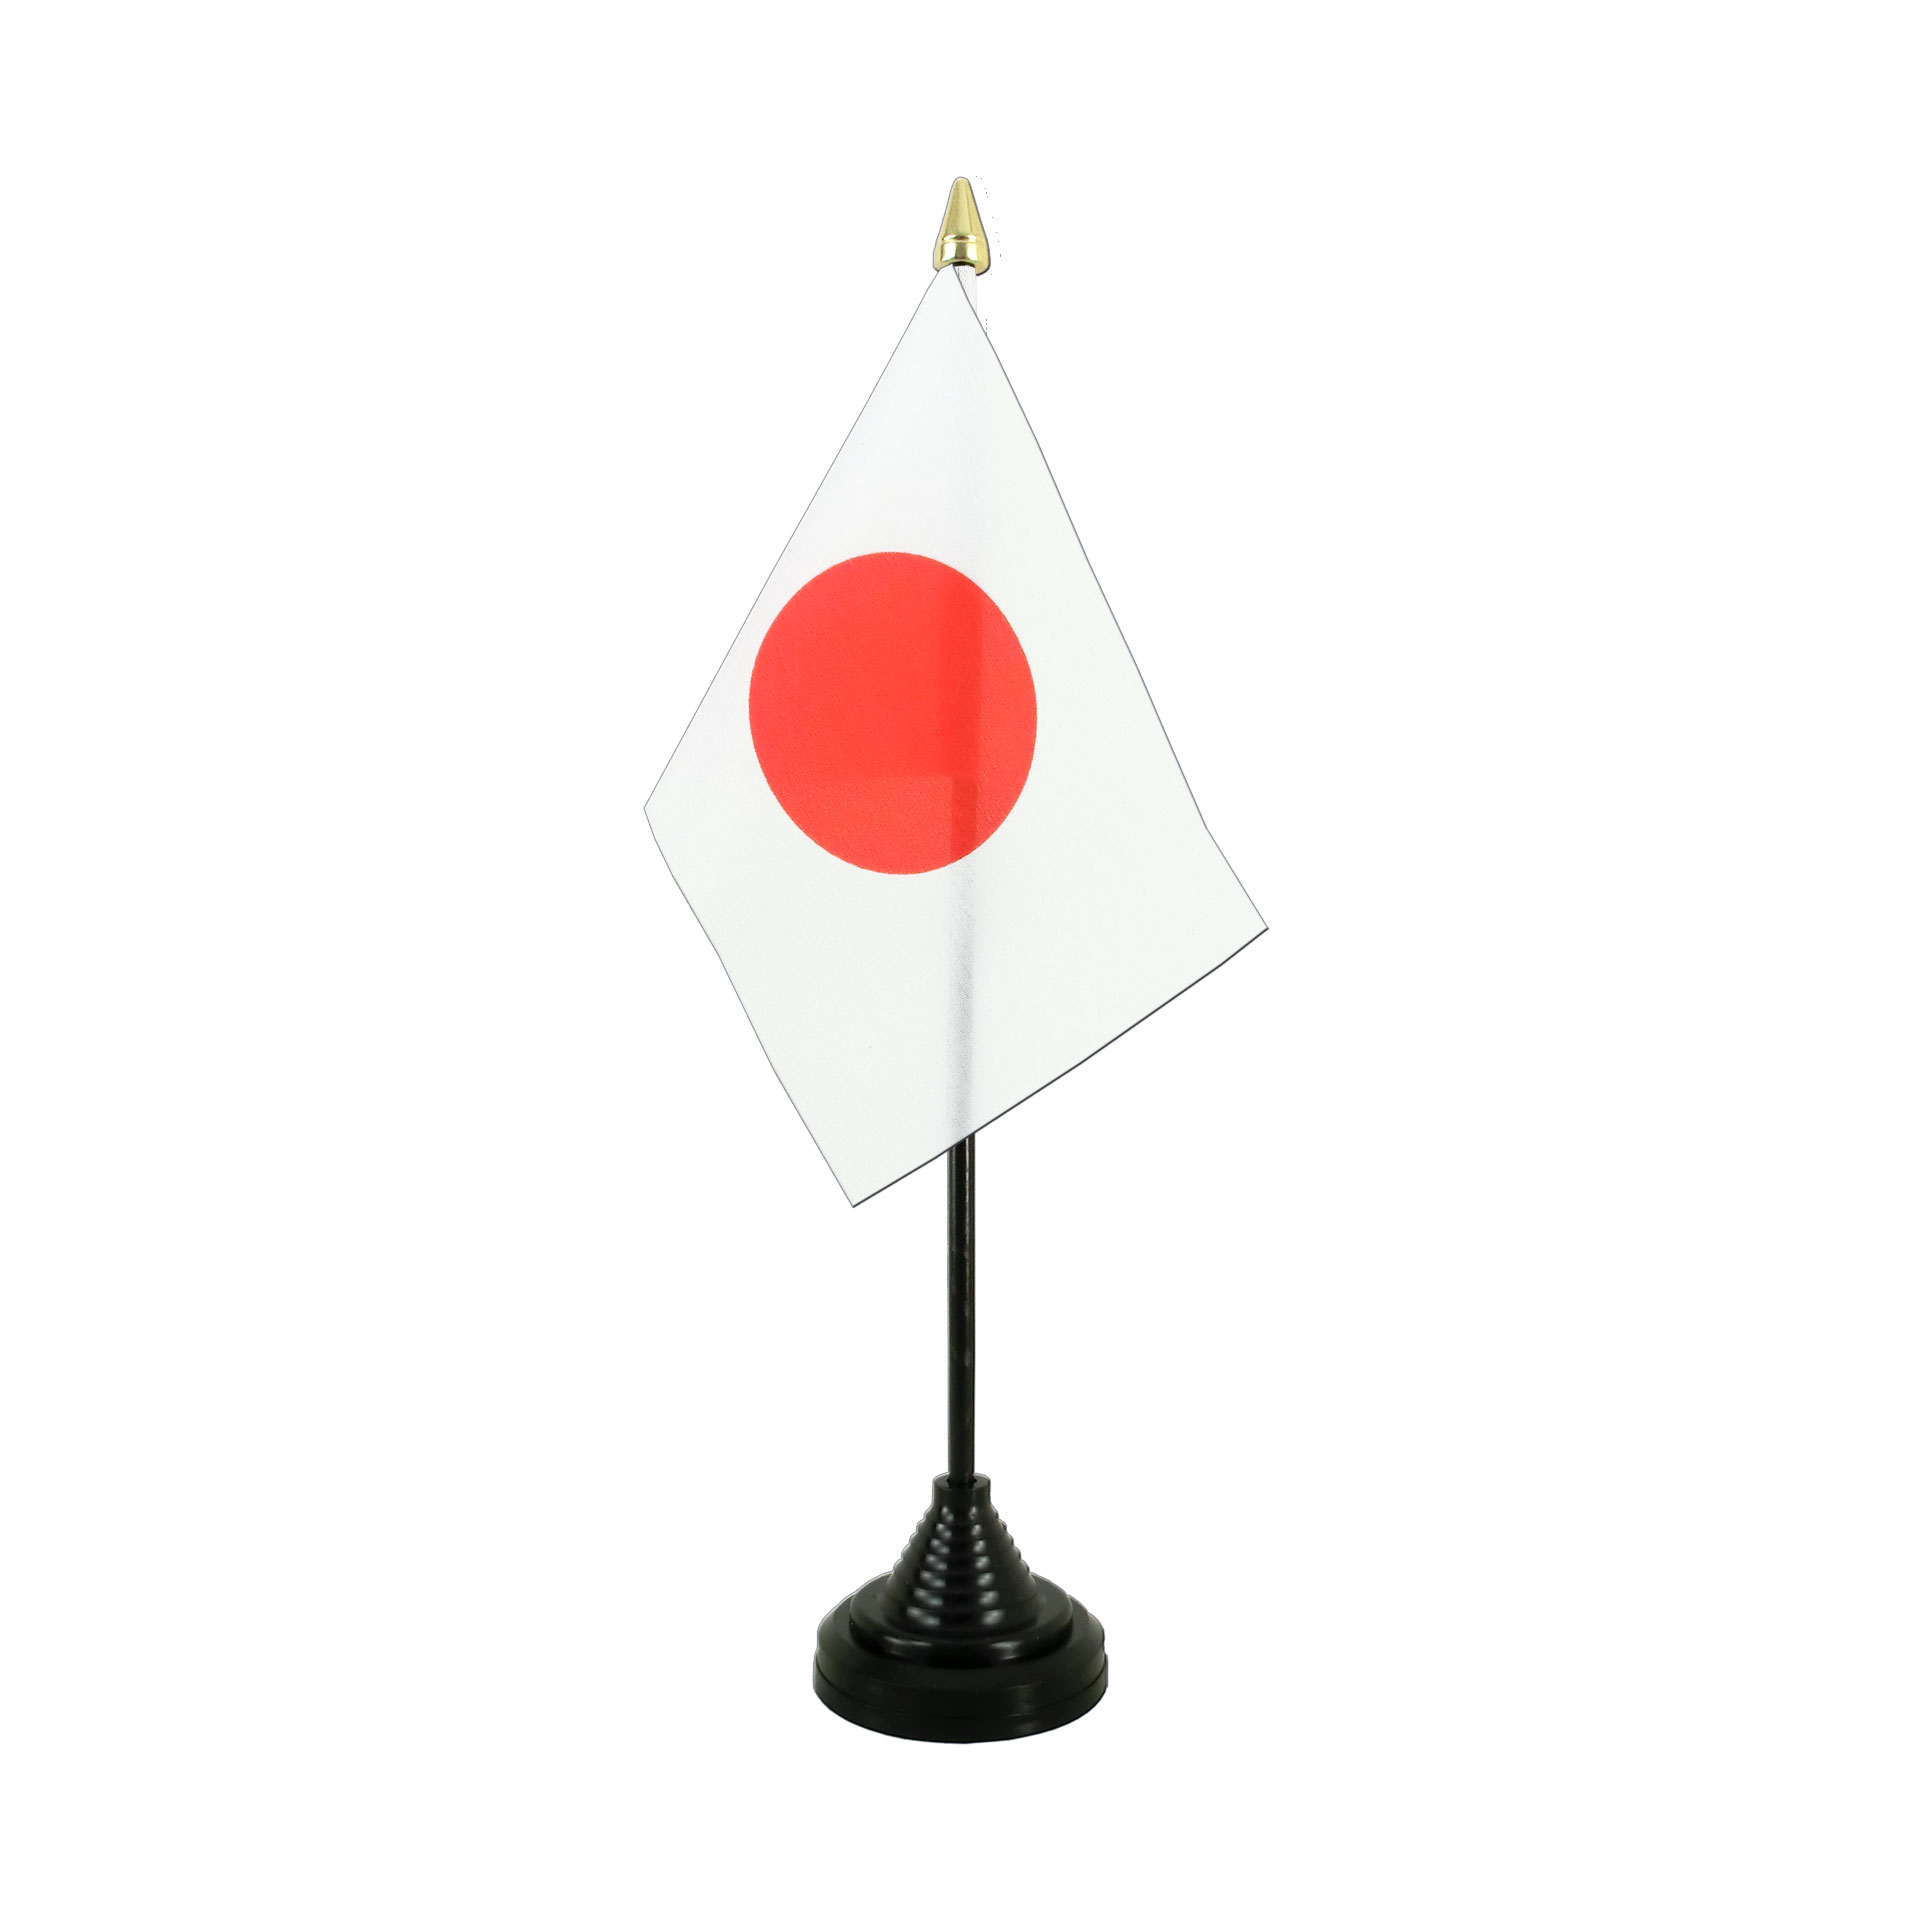 Tischflagge Oberzent Tischfahne Fahne Flagge 10 x 15 cm 